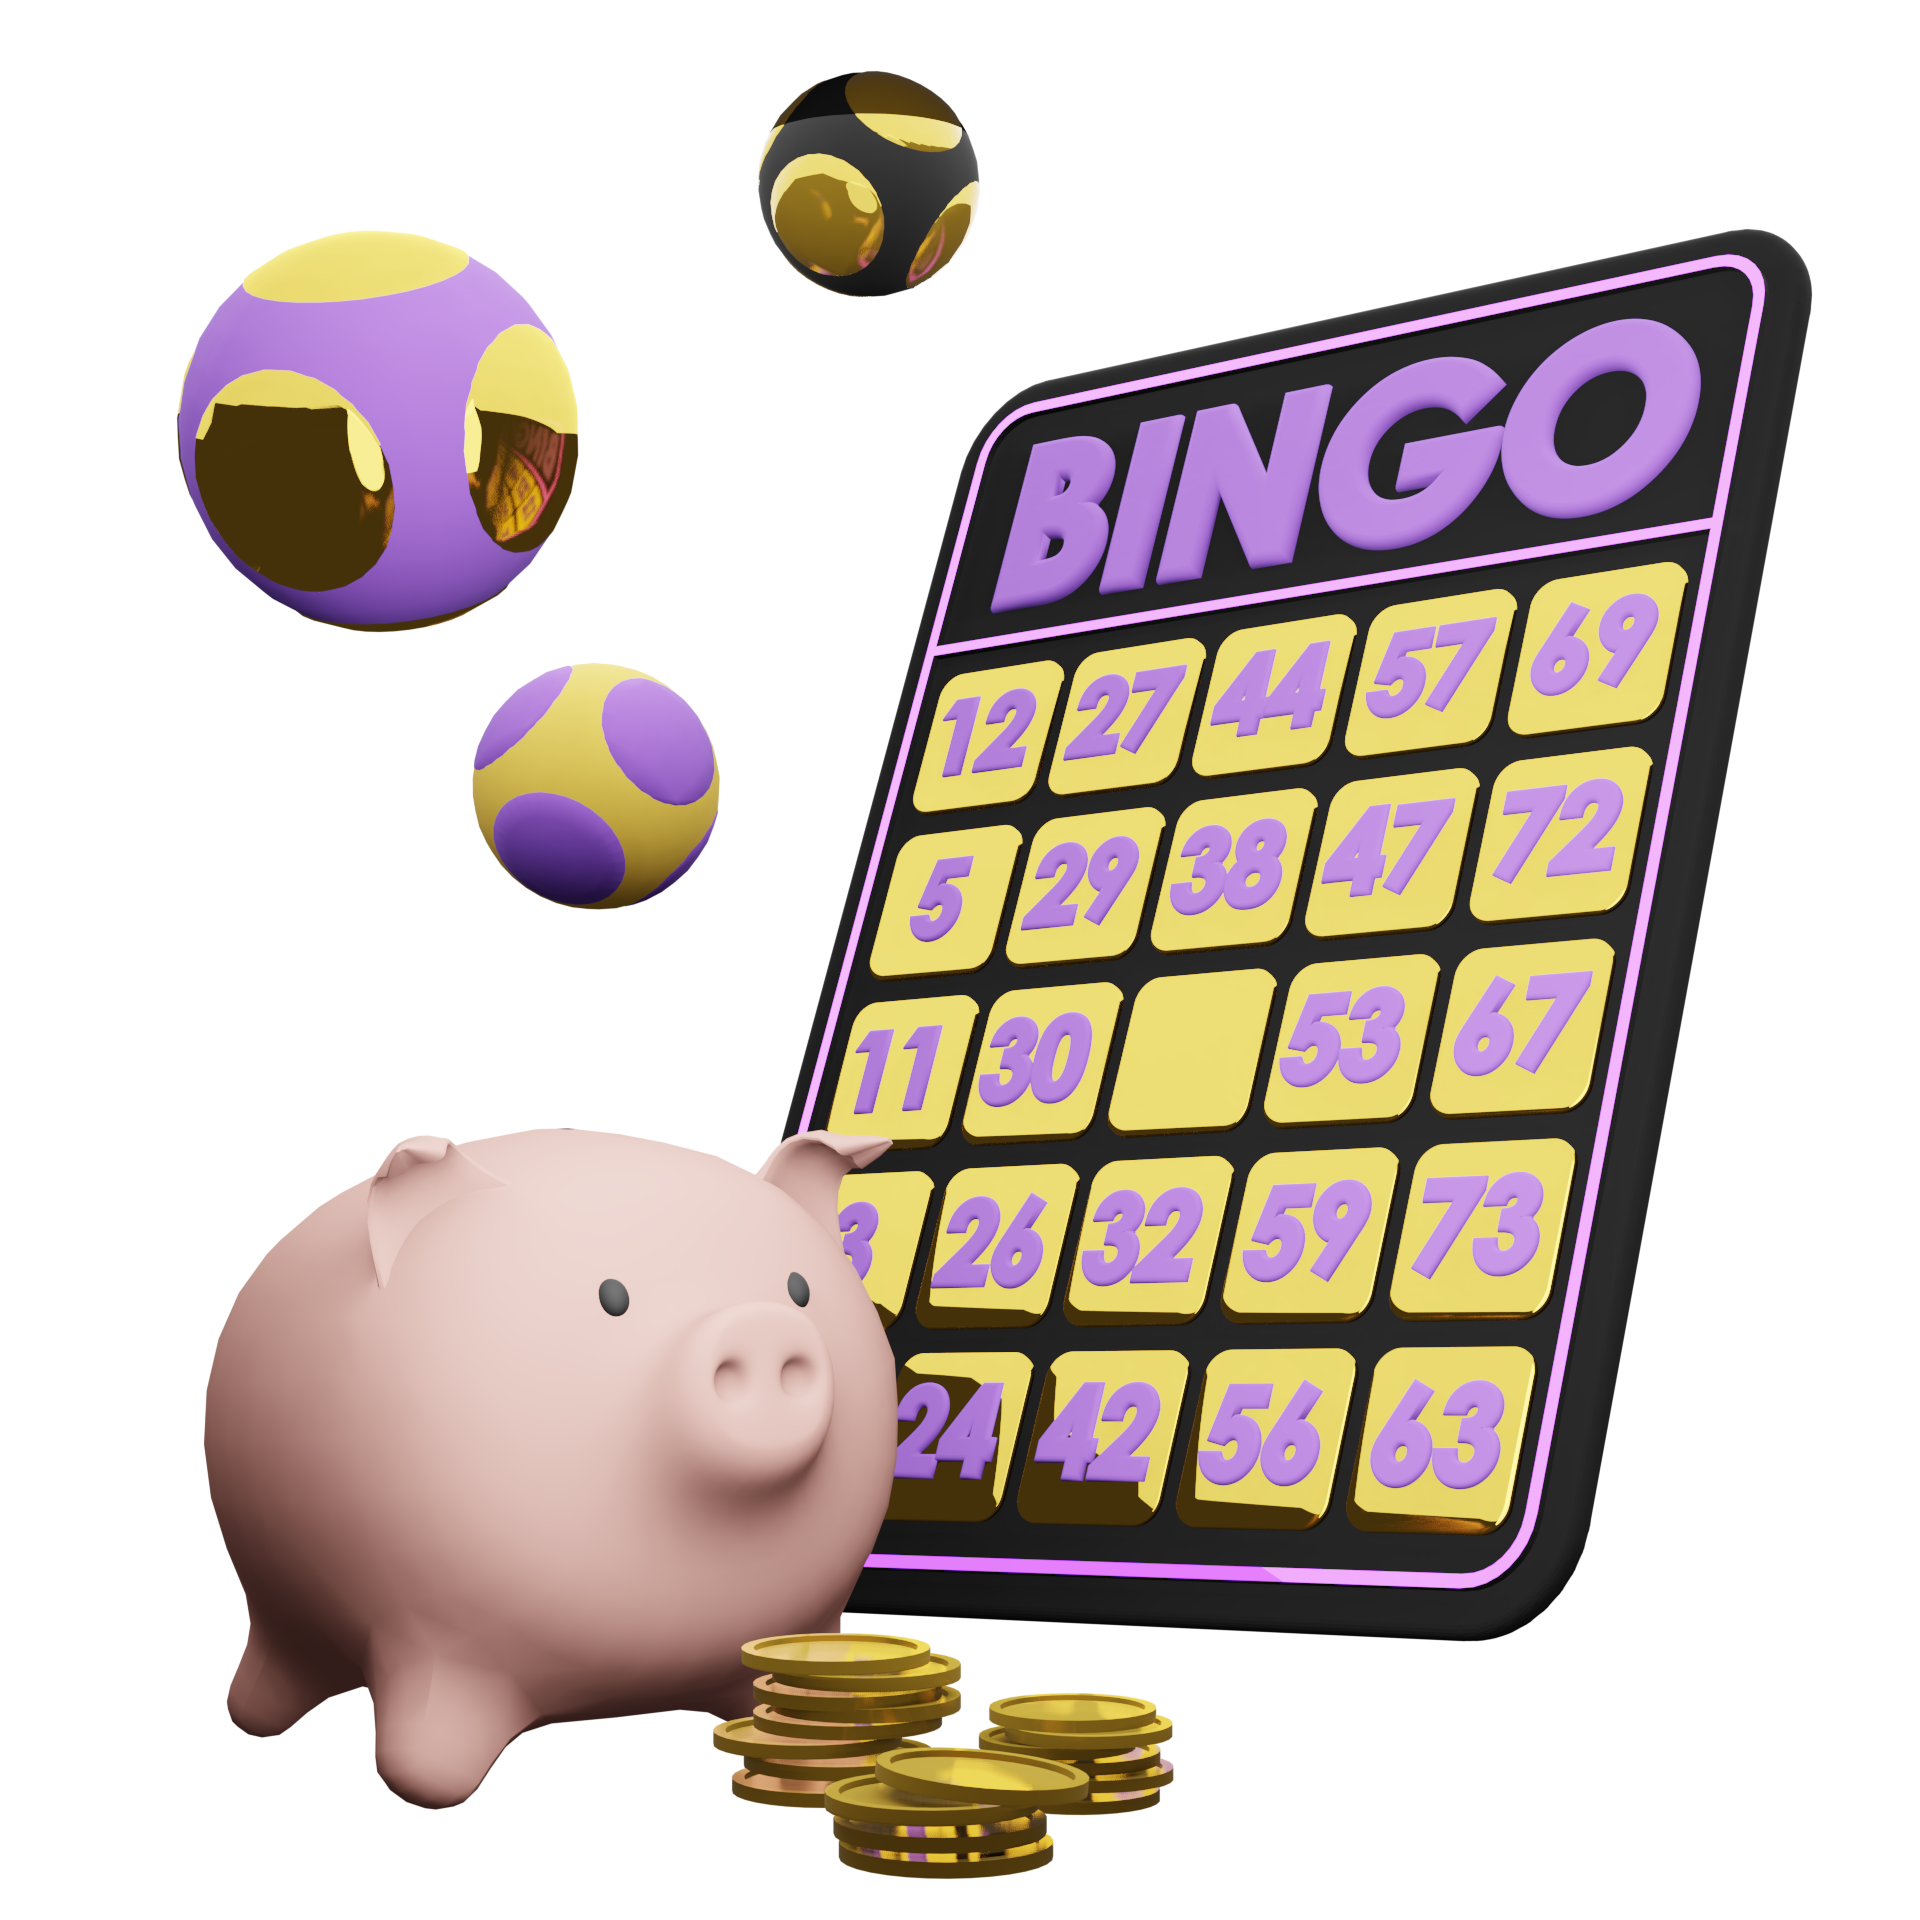 free bingo no deposit required